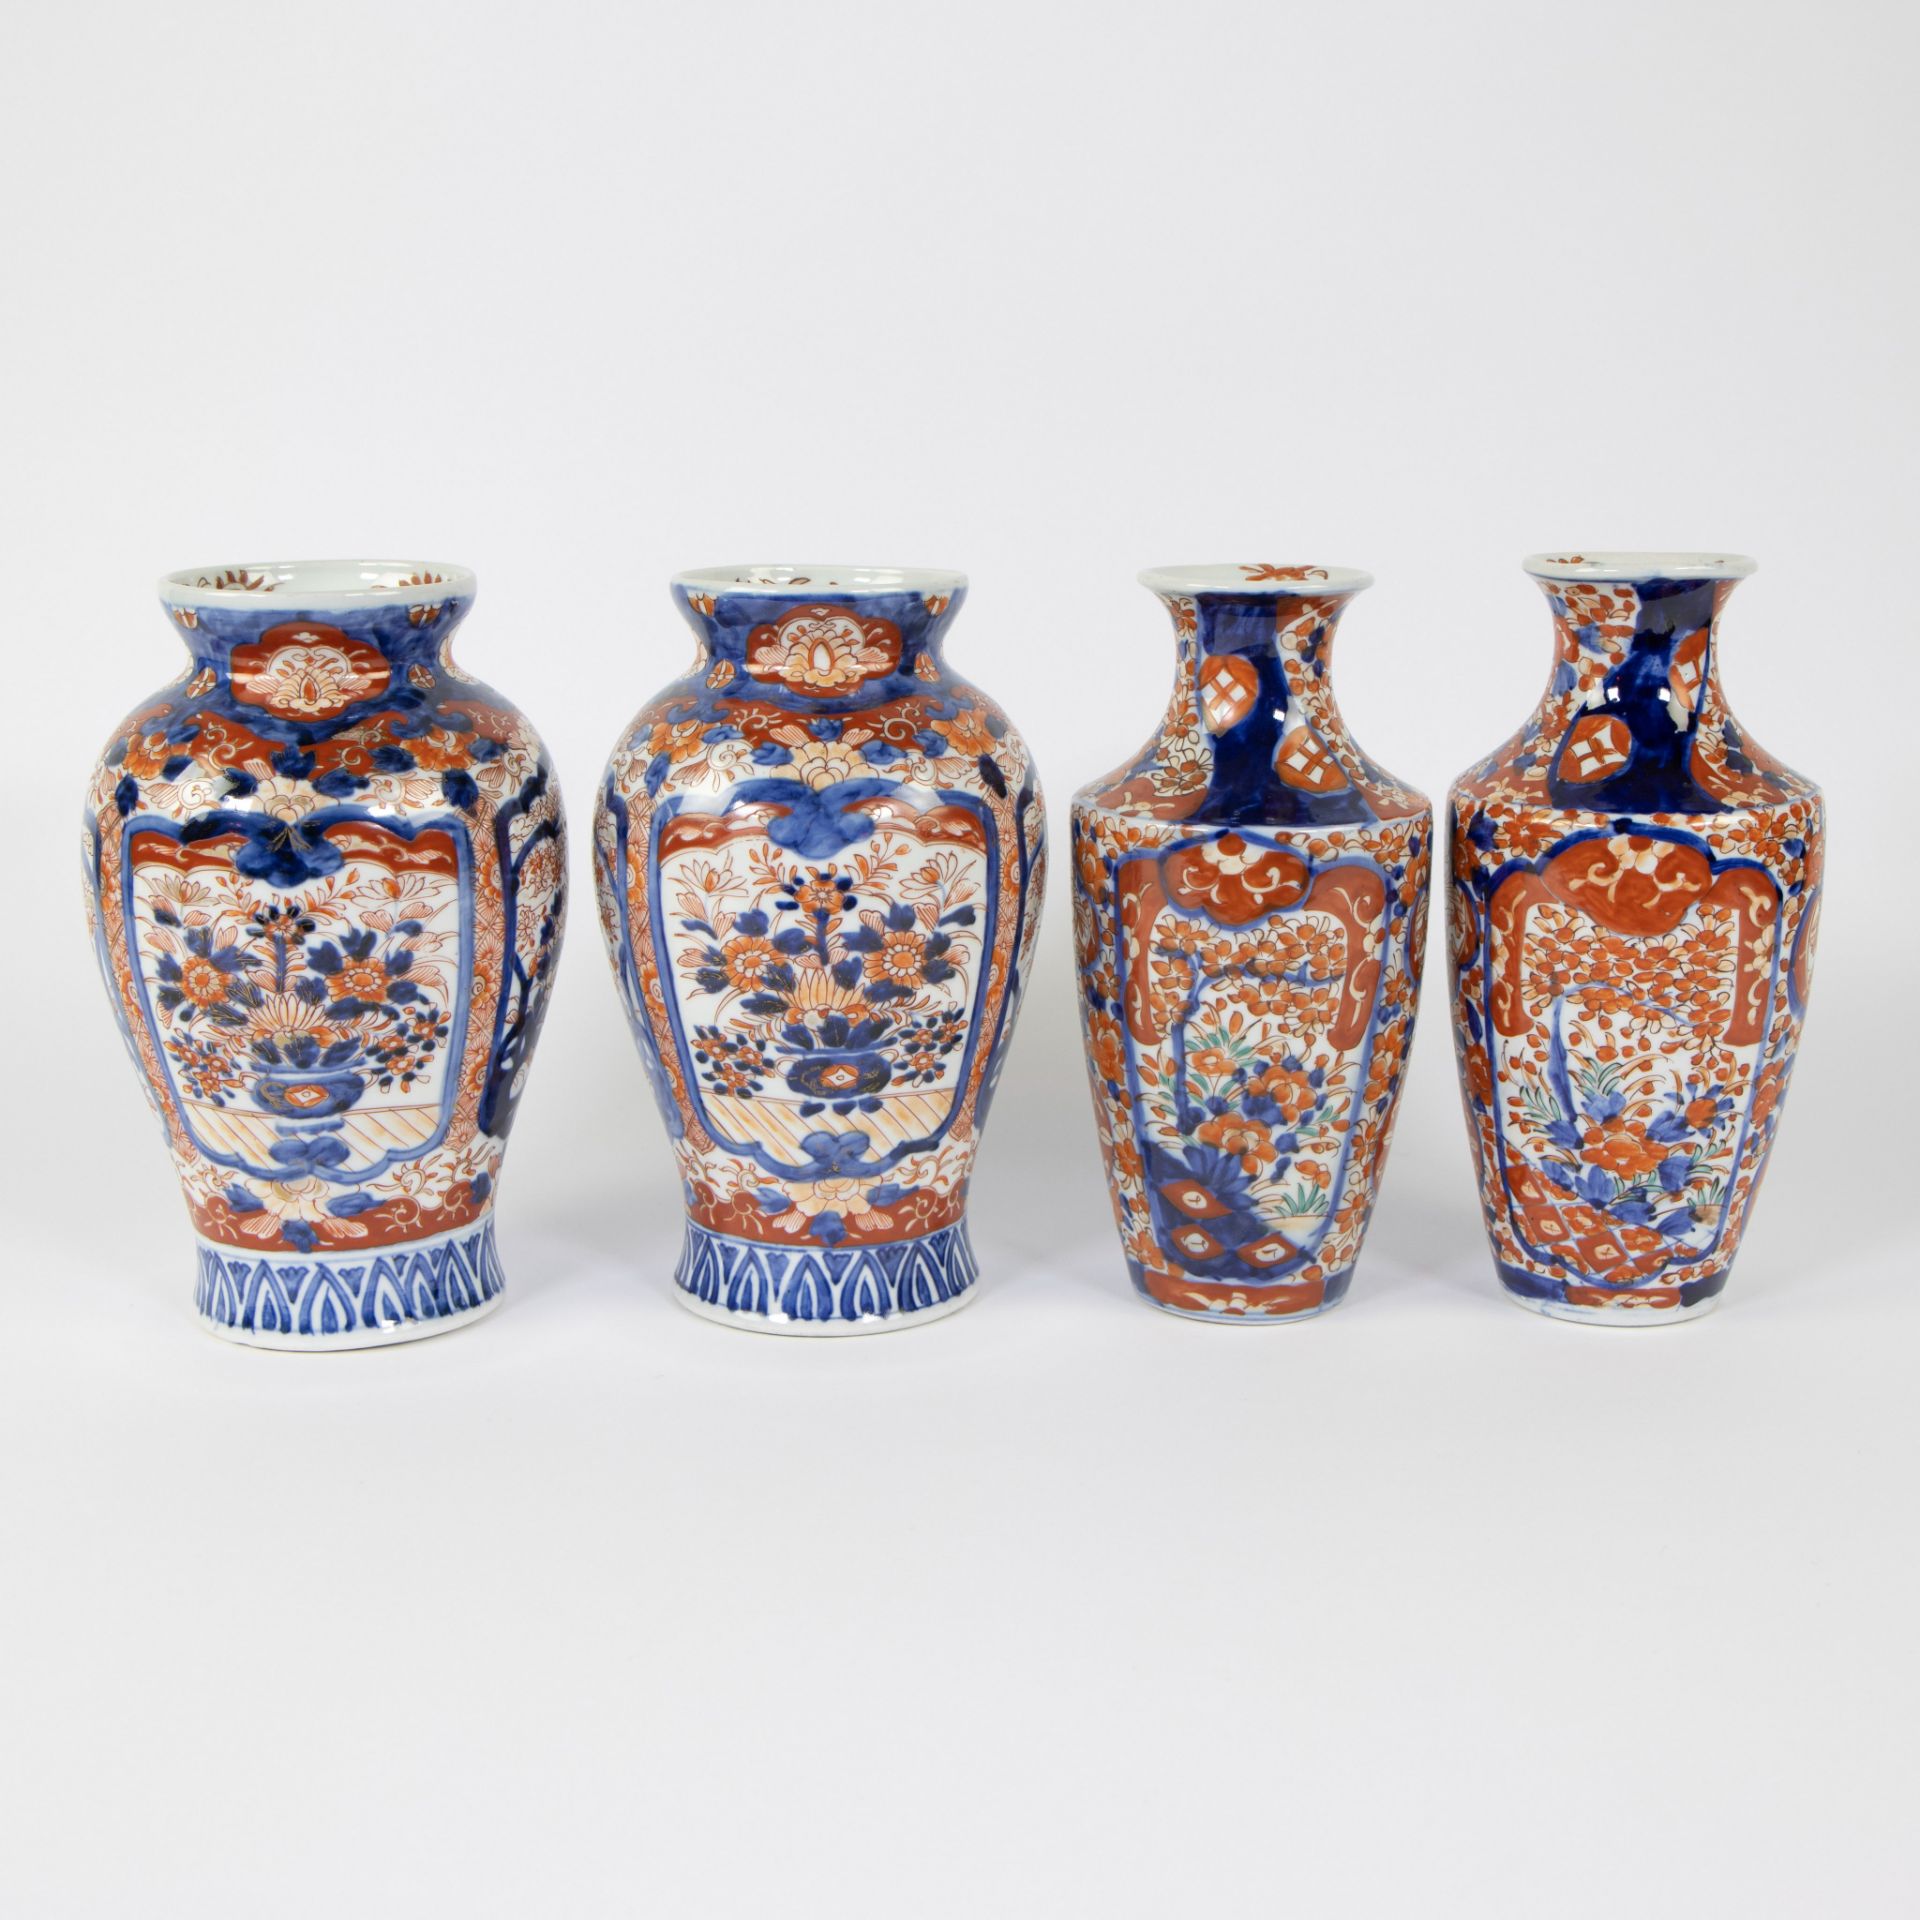 2 pairs of Japanese Imari vases, 19th century - Image 3 of 6